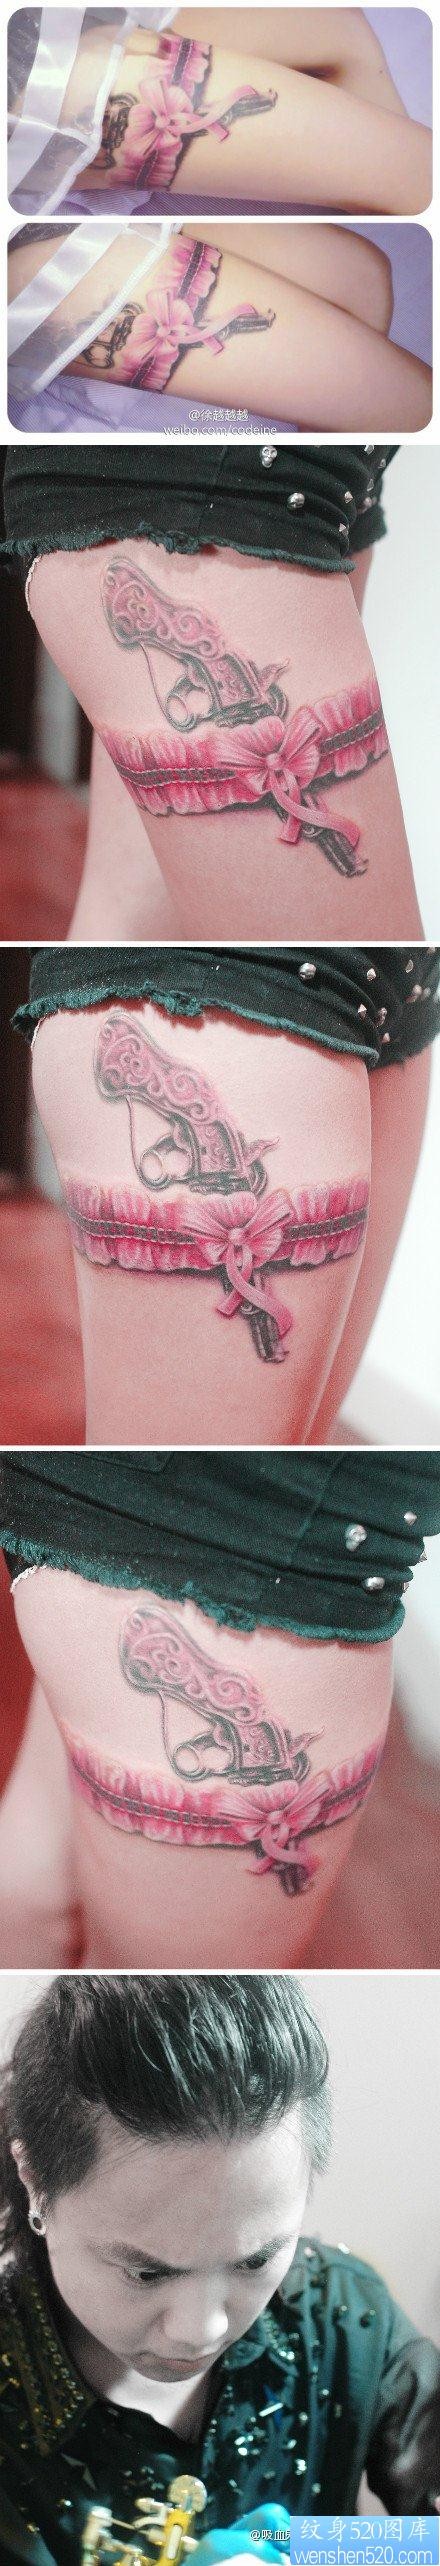 美女腿部流行精美的一张粉色蕾丝与手枪纹身图片